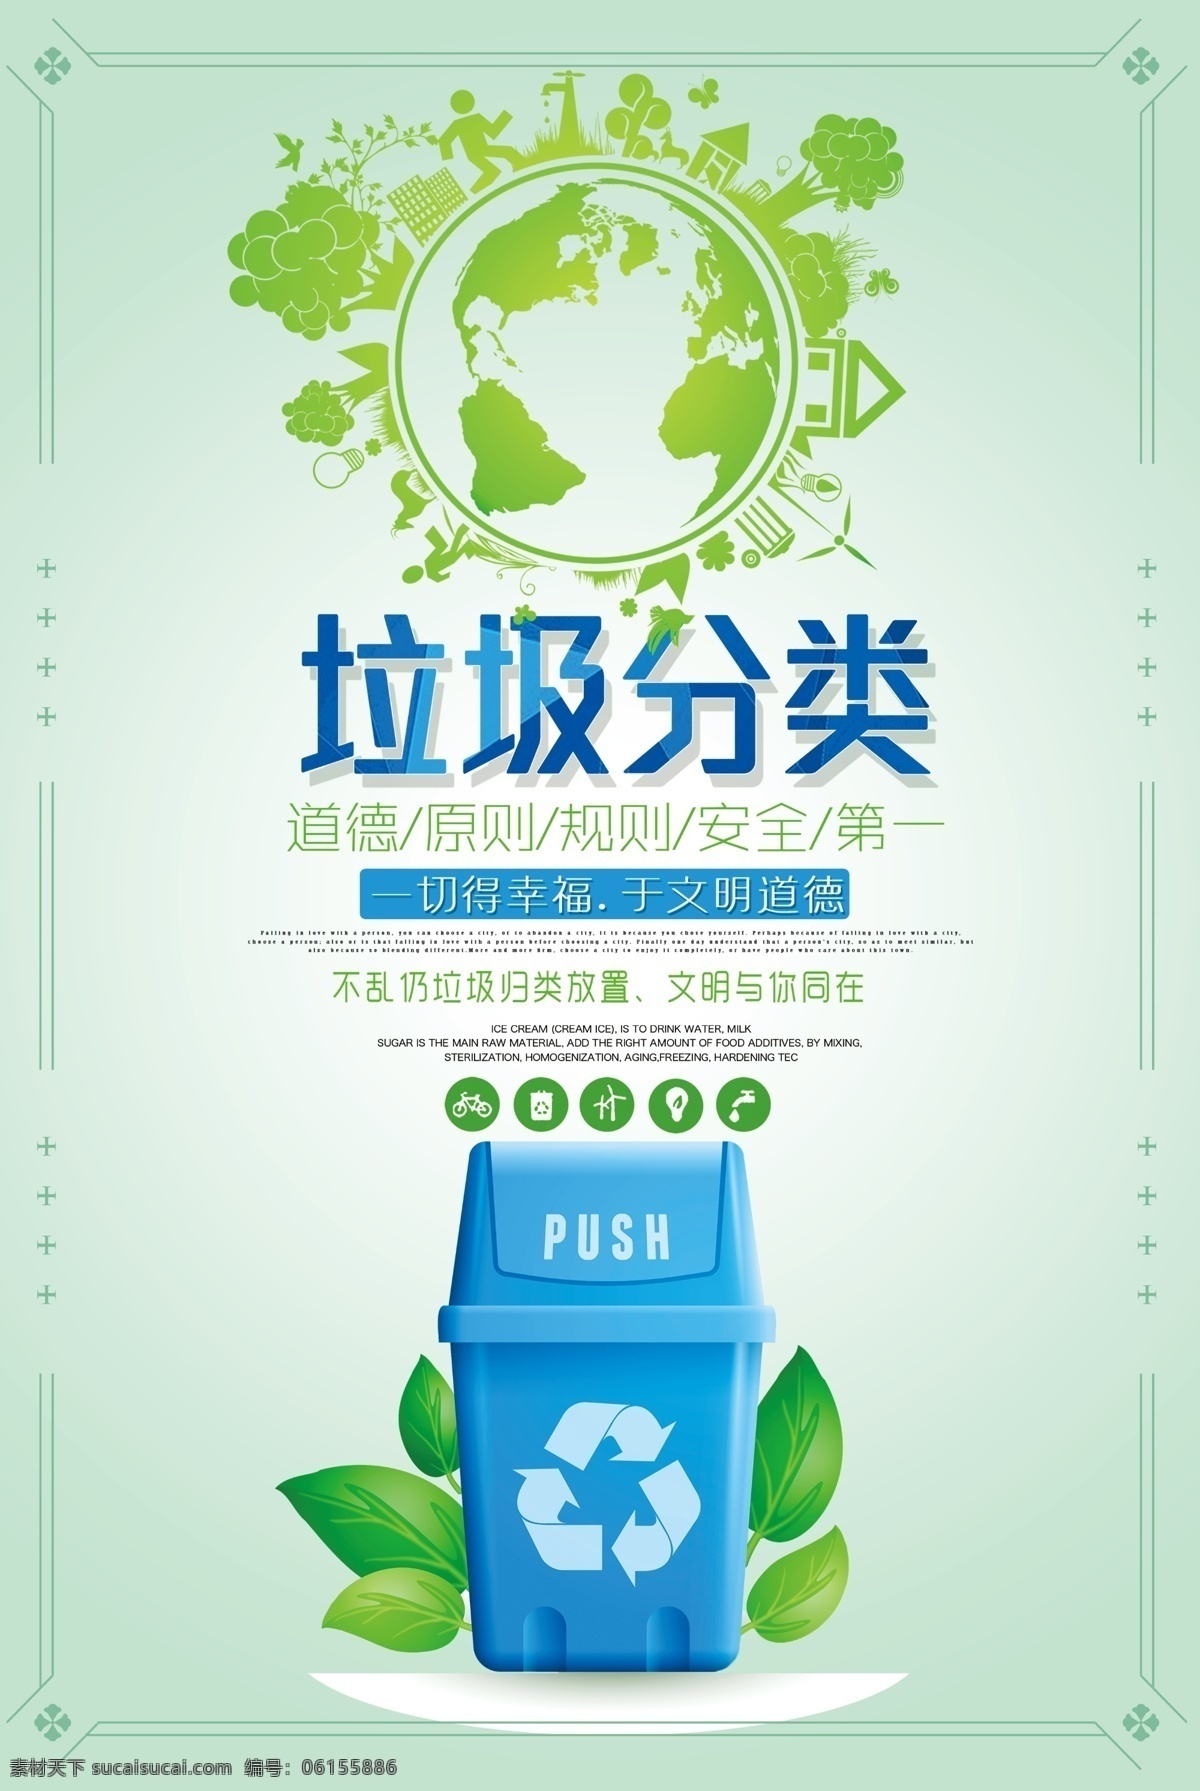 创建 文明 卫生 城市 垃圾 分类 环保 公 创建文明 卫生城市 垃圾分类 环保公益 宣传单 ps海报 设计psd 素材模板